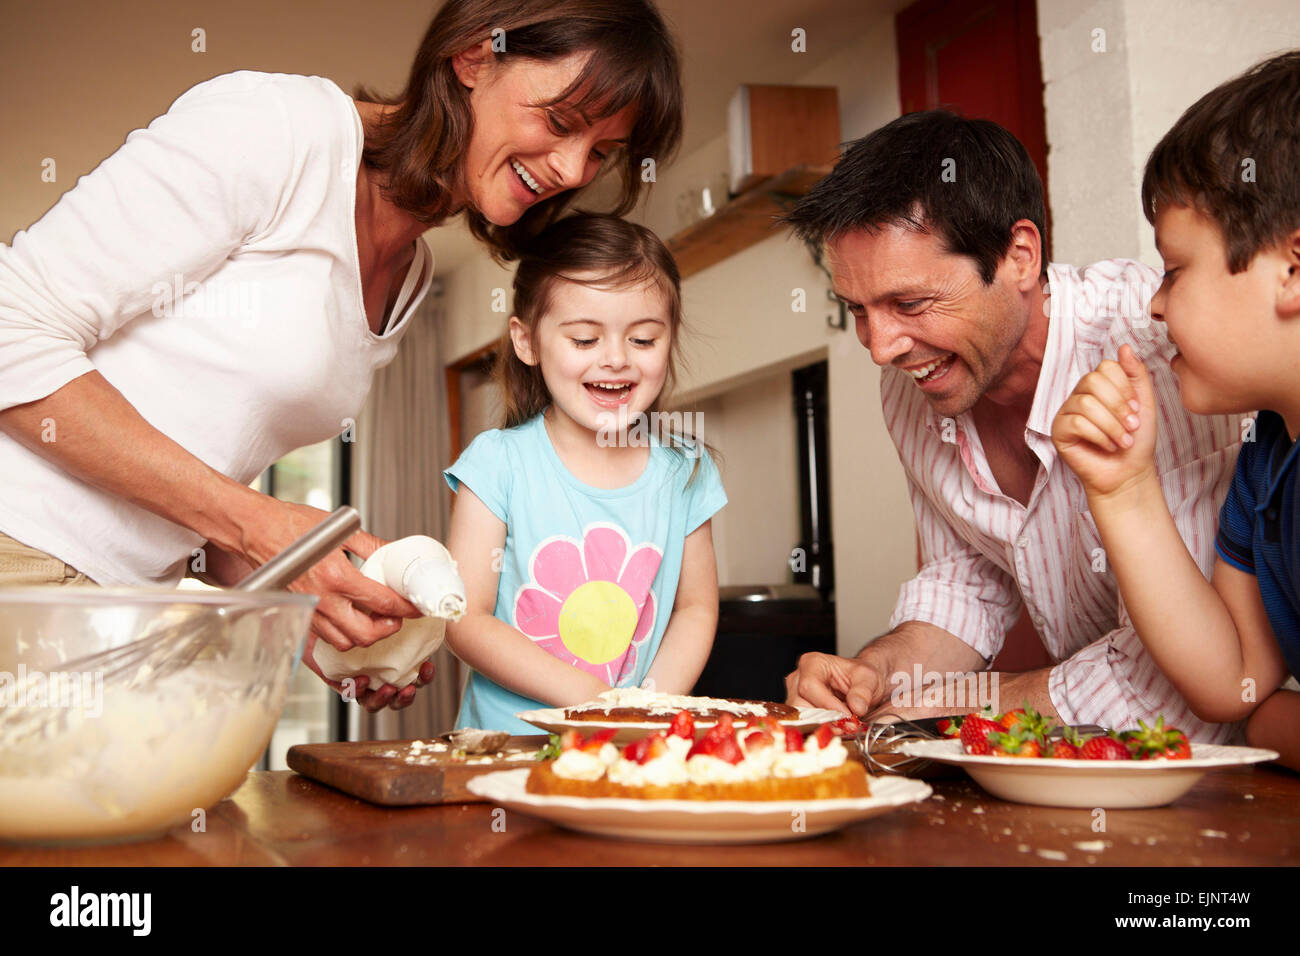 Eine Familie, zwei Eltern und zwei Kinder in der Küche einen Kuchen mit Obst und Sahne Puderzucker. Stockfoto